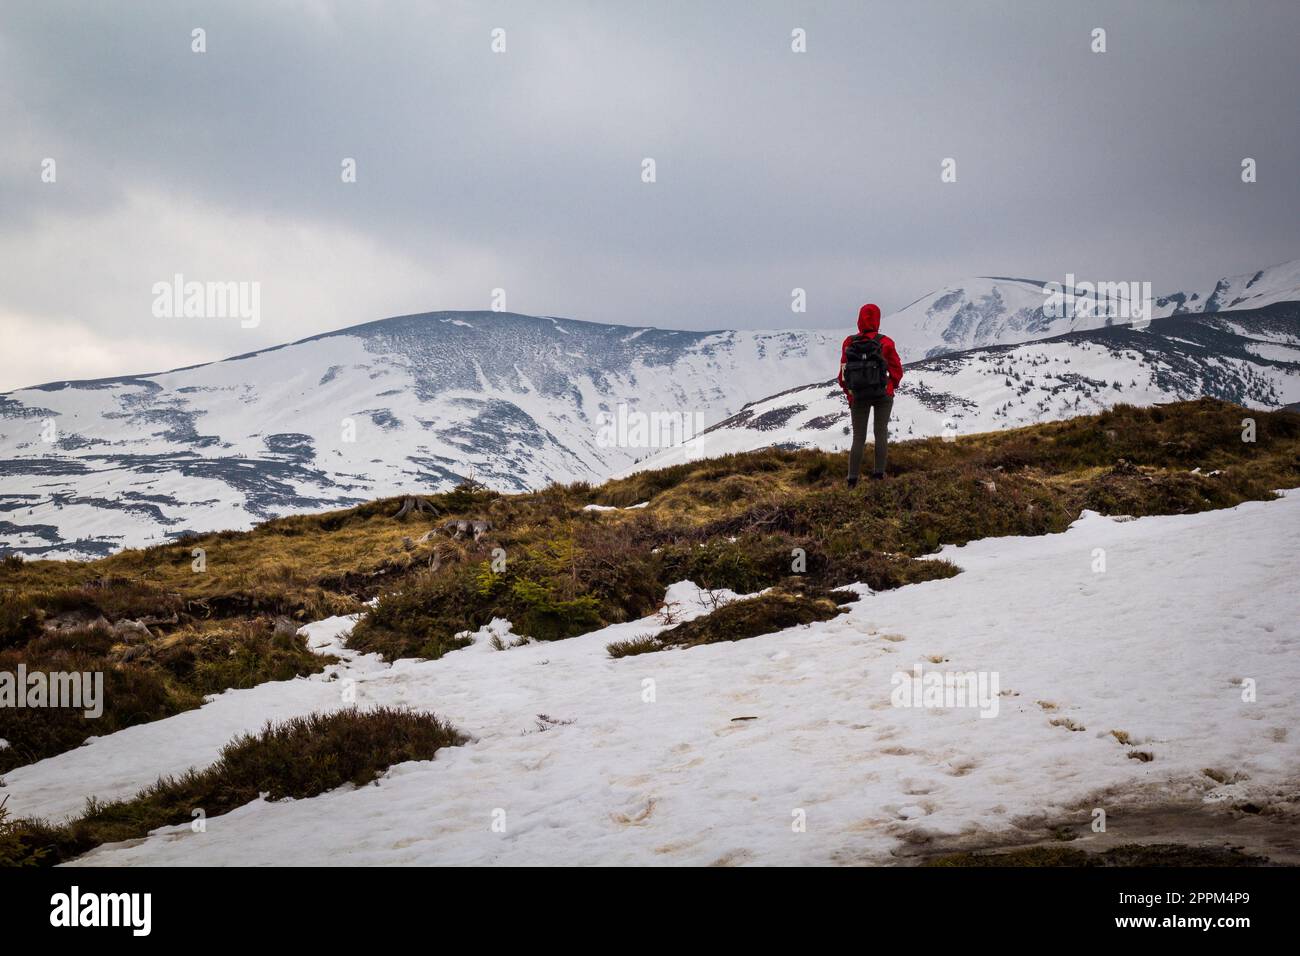 Randonneur voyageant à travers les pentes enneigées de montagne paysage photo Banque D'Images